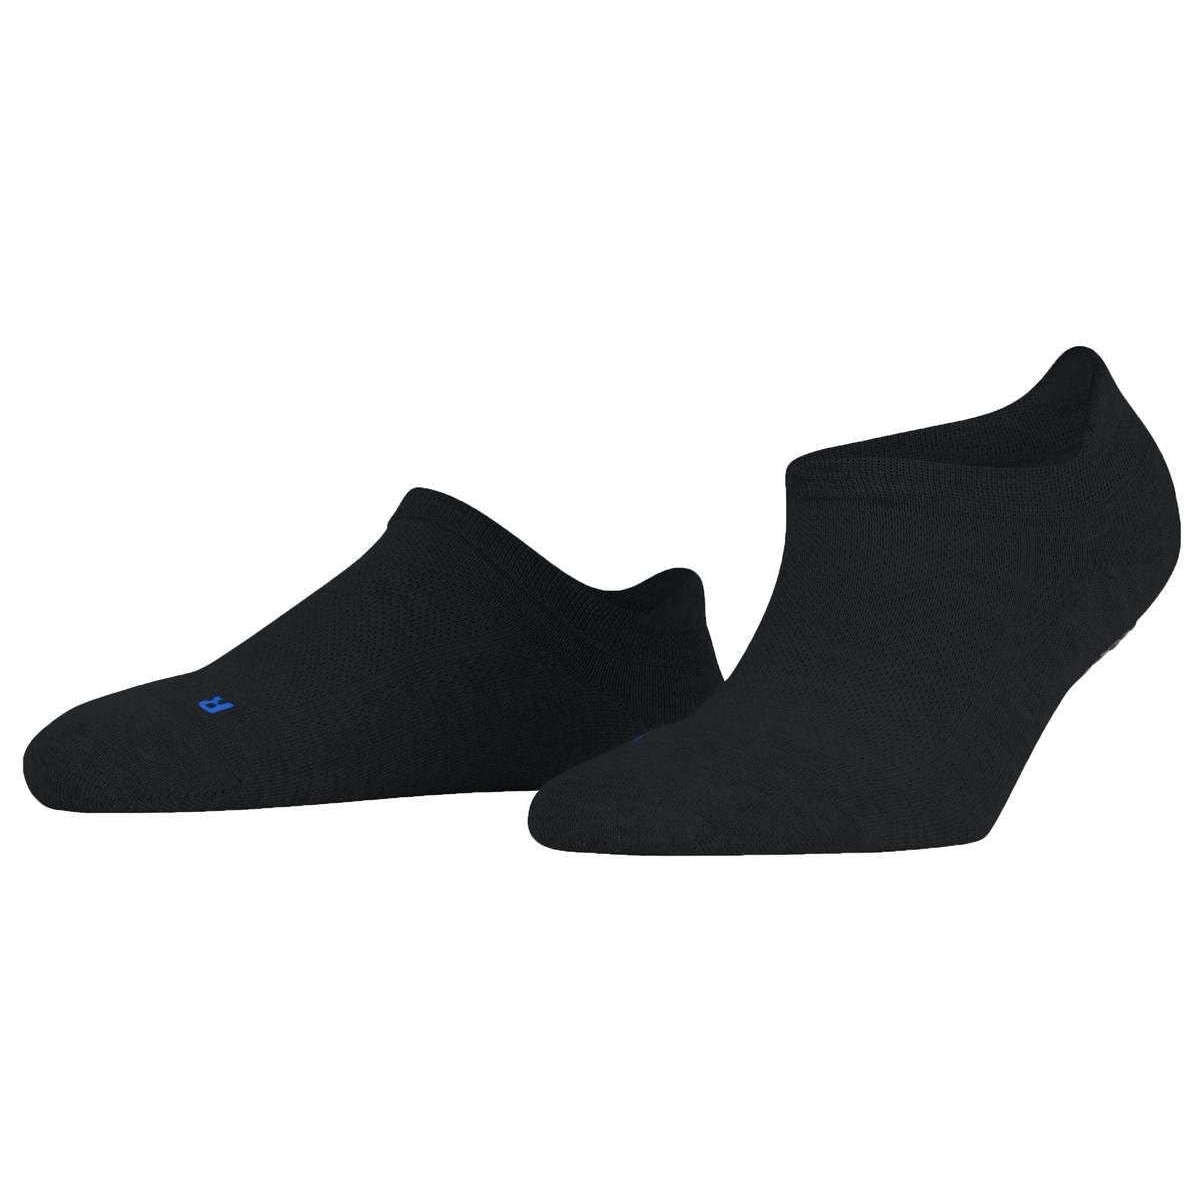 Falke Cool Kick Sneaker Socks - Black - Large - 5.5-7.5 UK | 8-9.5 US | 39-41 EUR